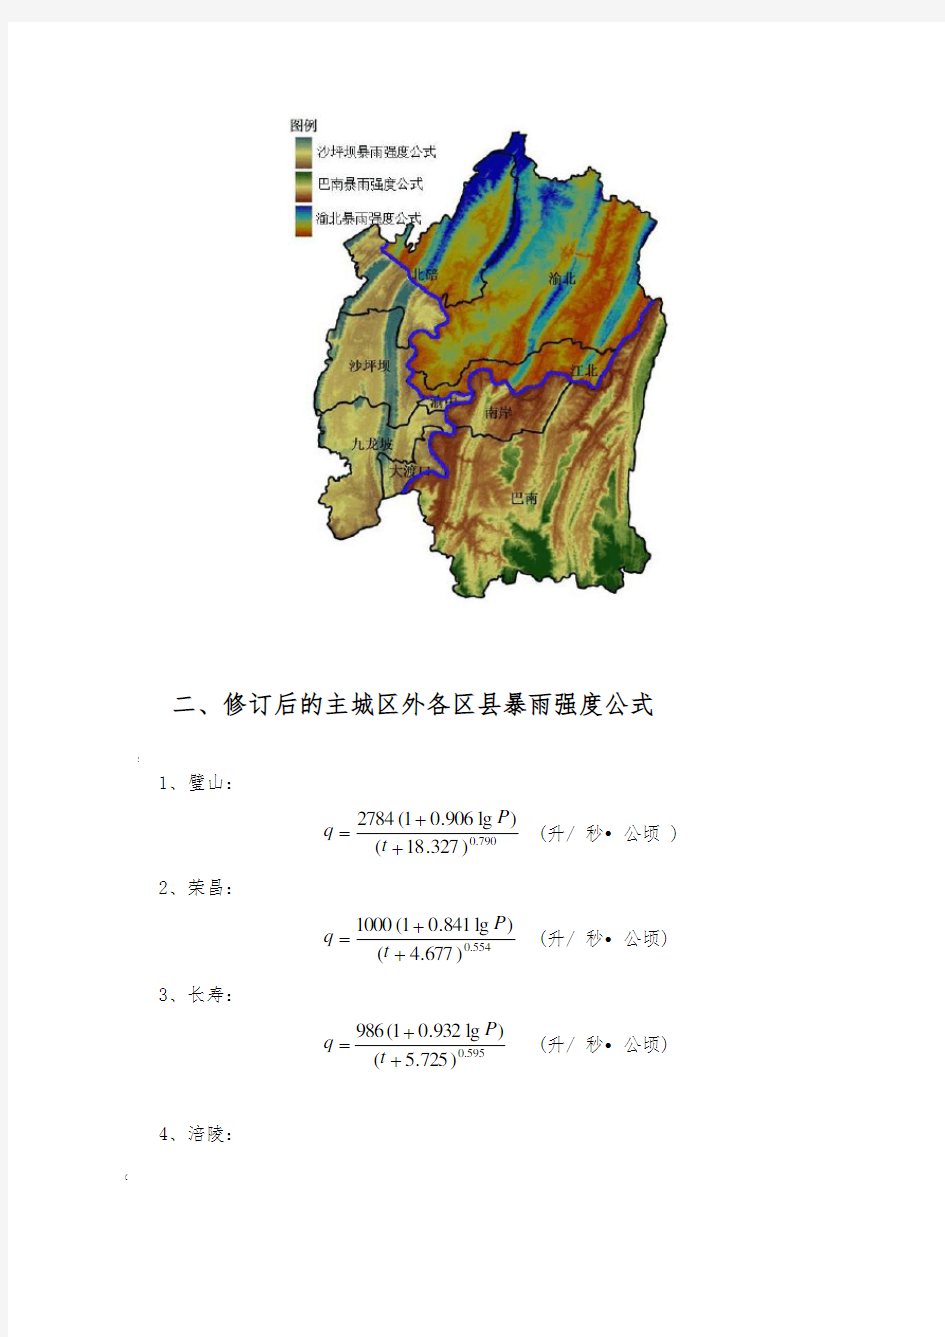 重庆市暴雨强度修订公式与设计暴雨雨型